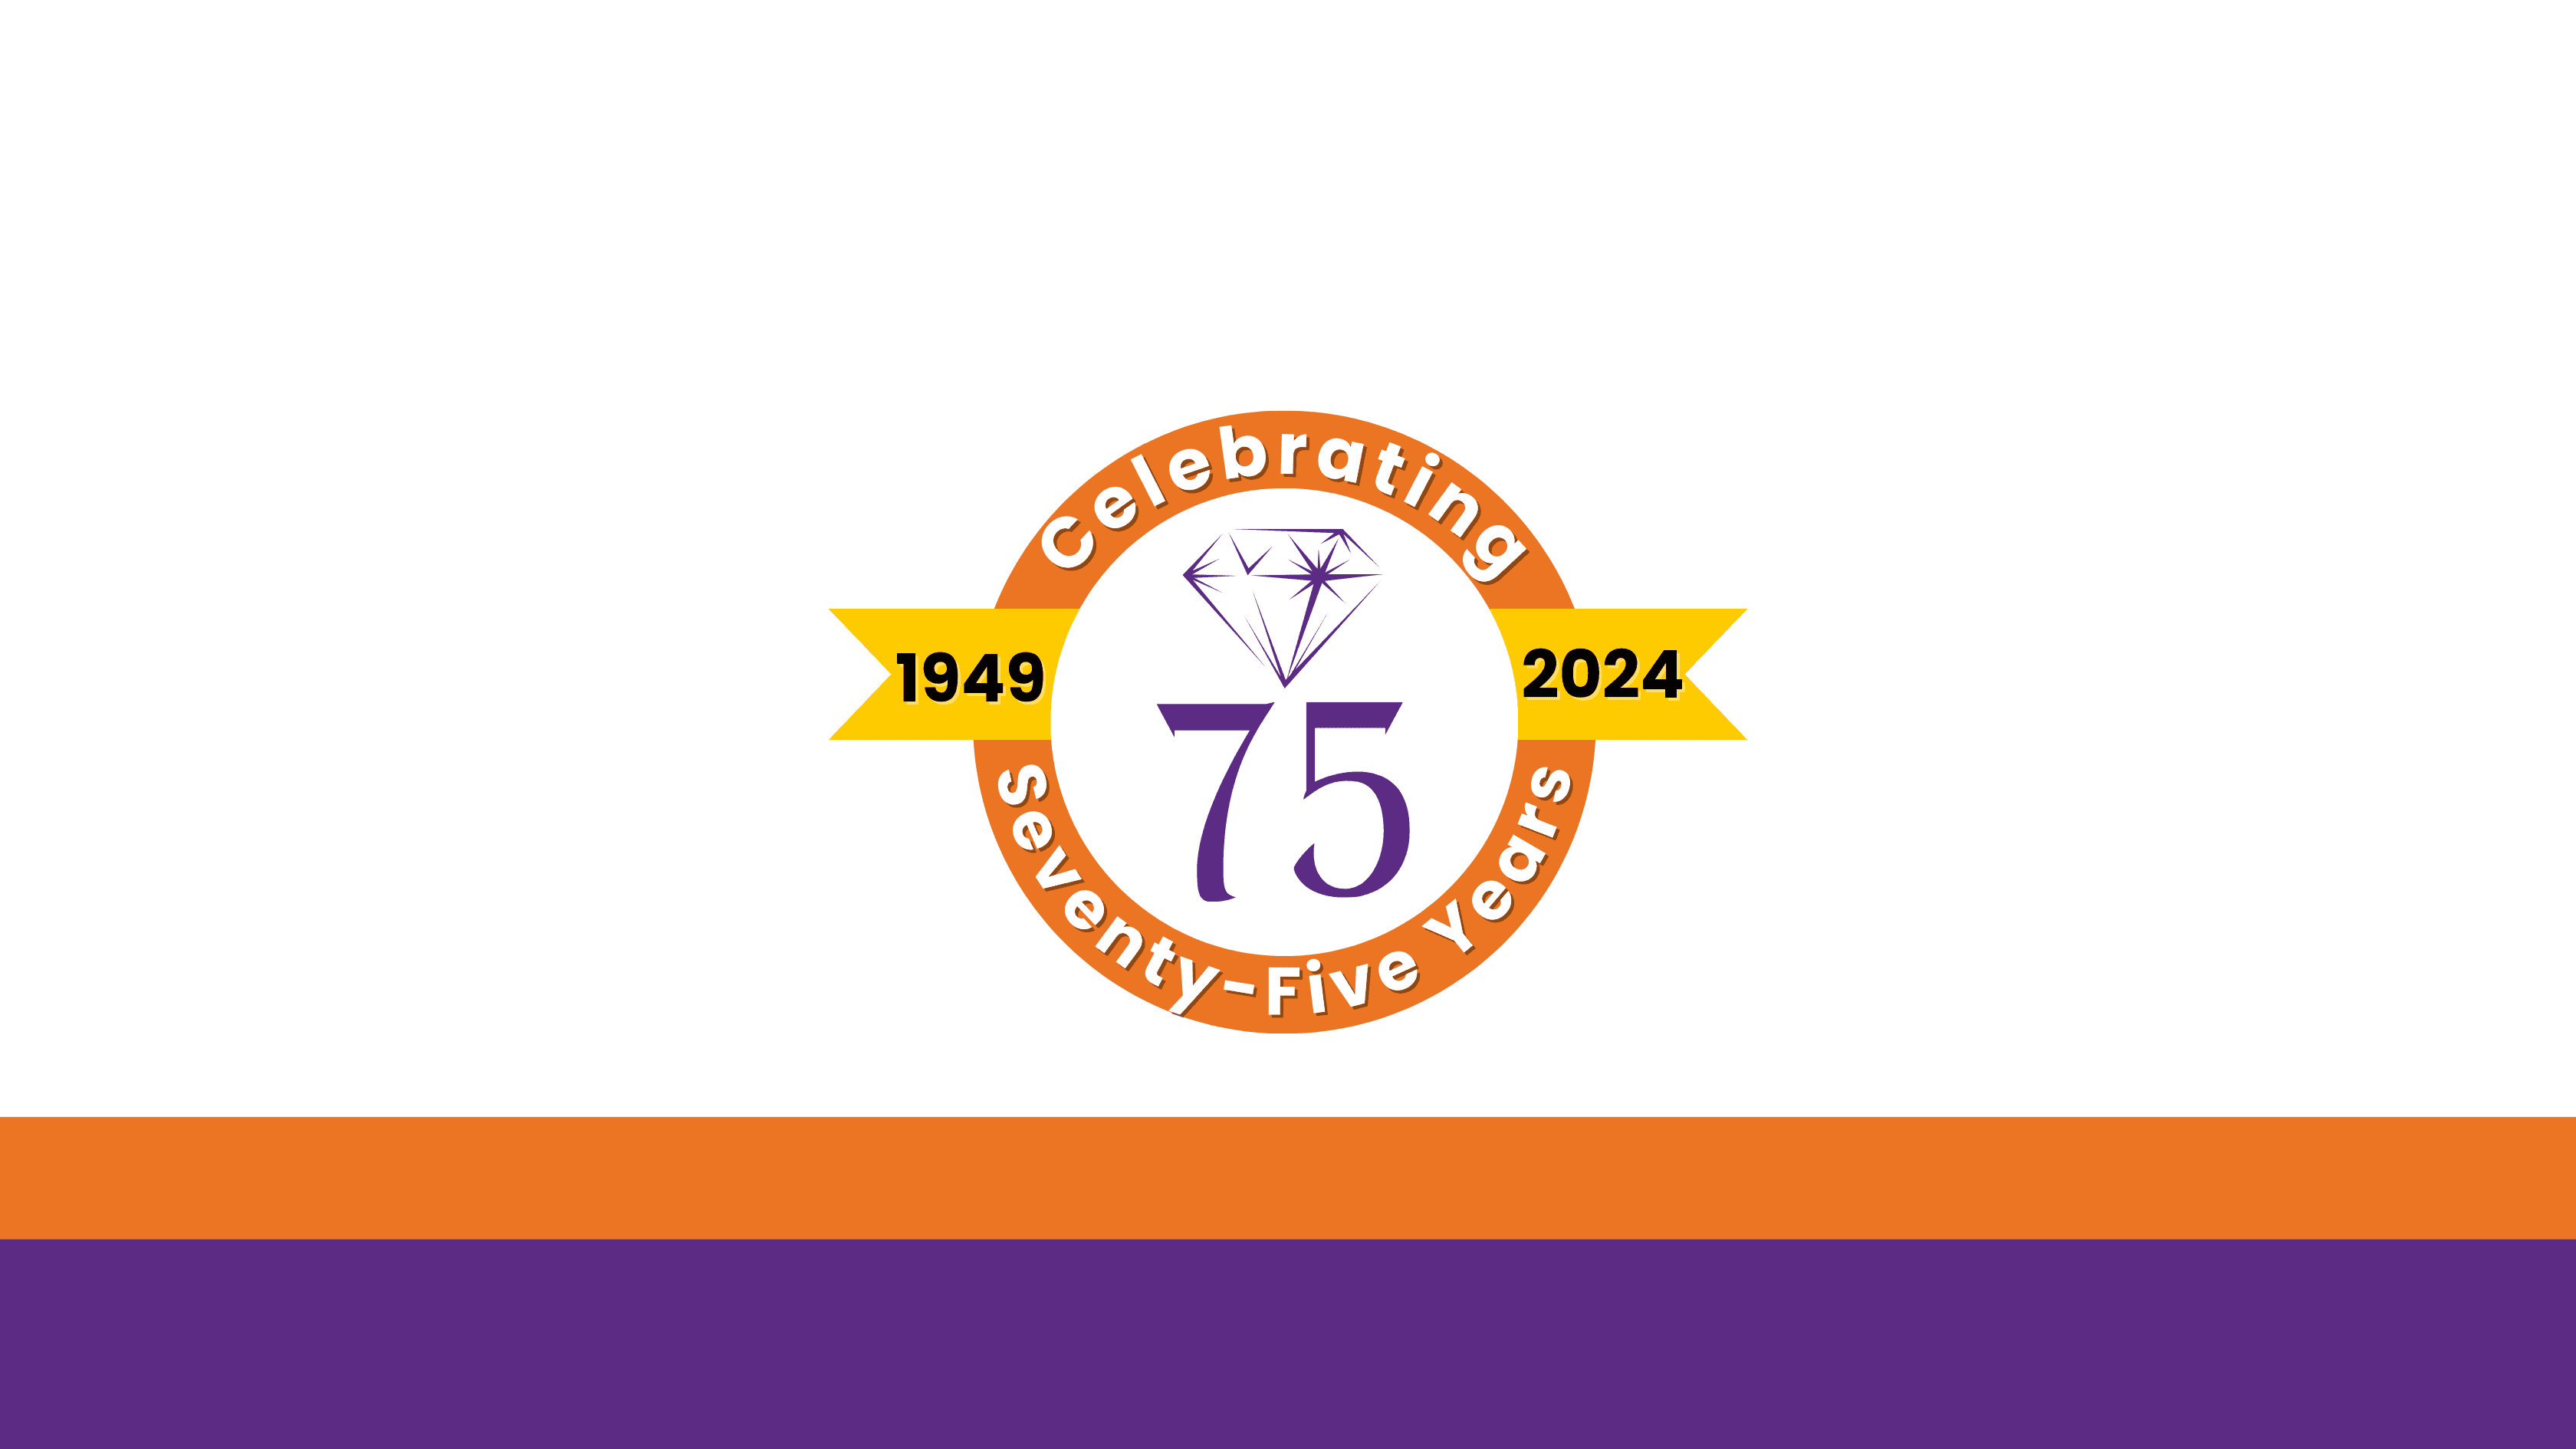 Celebrating 75 Years!